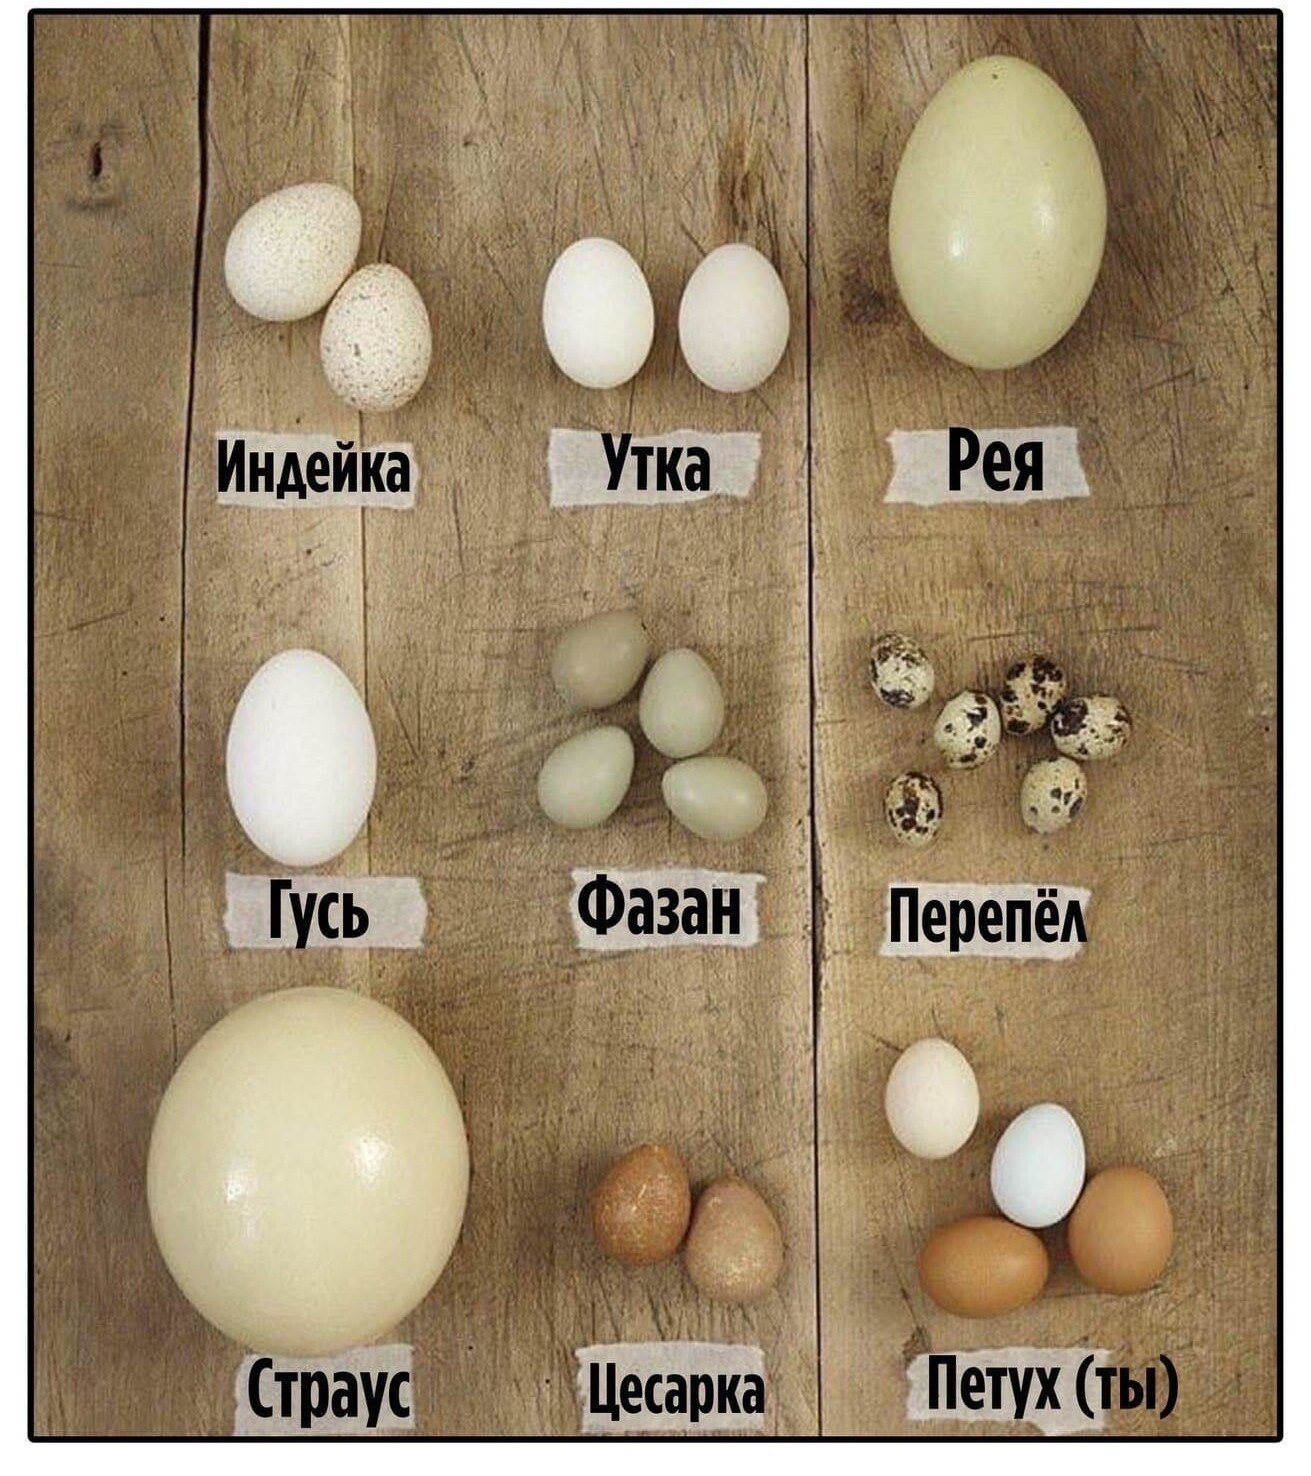 Игры и там яйца. Видя яиц. Яйца разные. Яйца кукушки. Птичьи яйца.